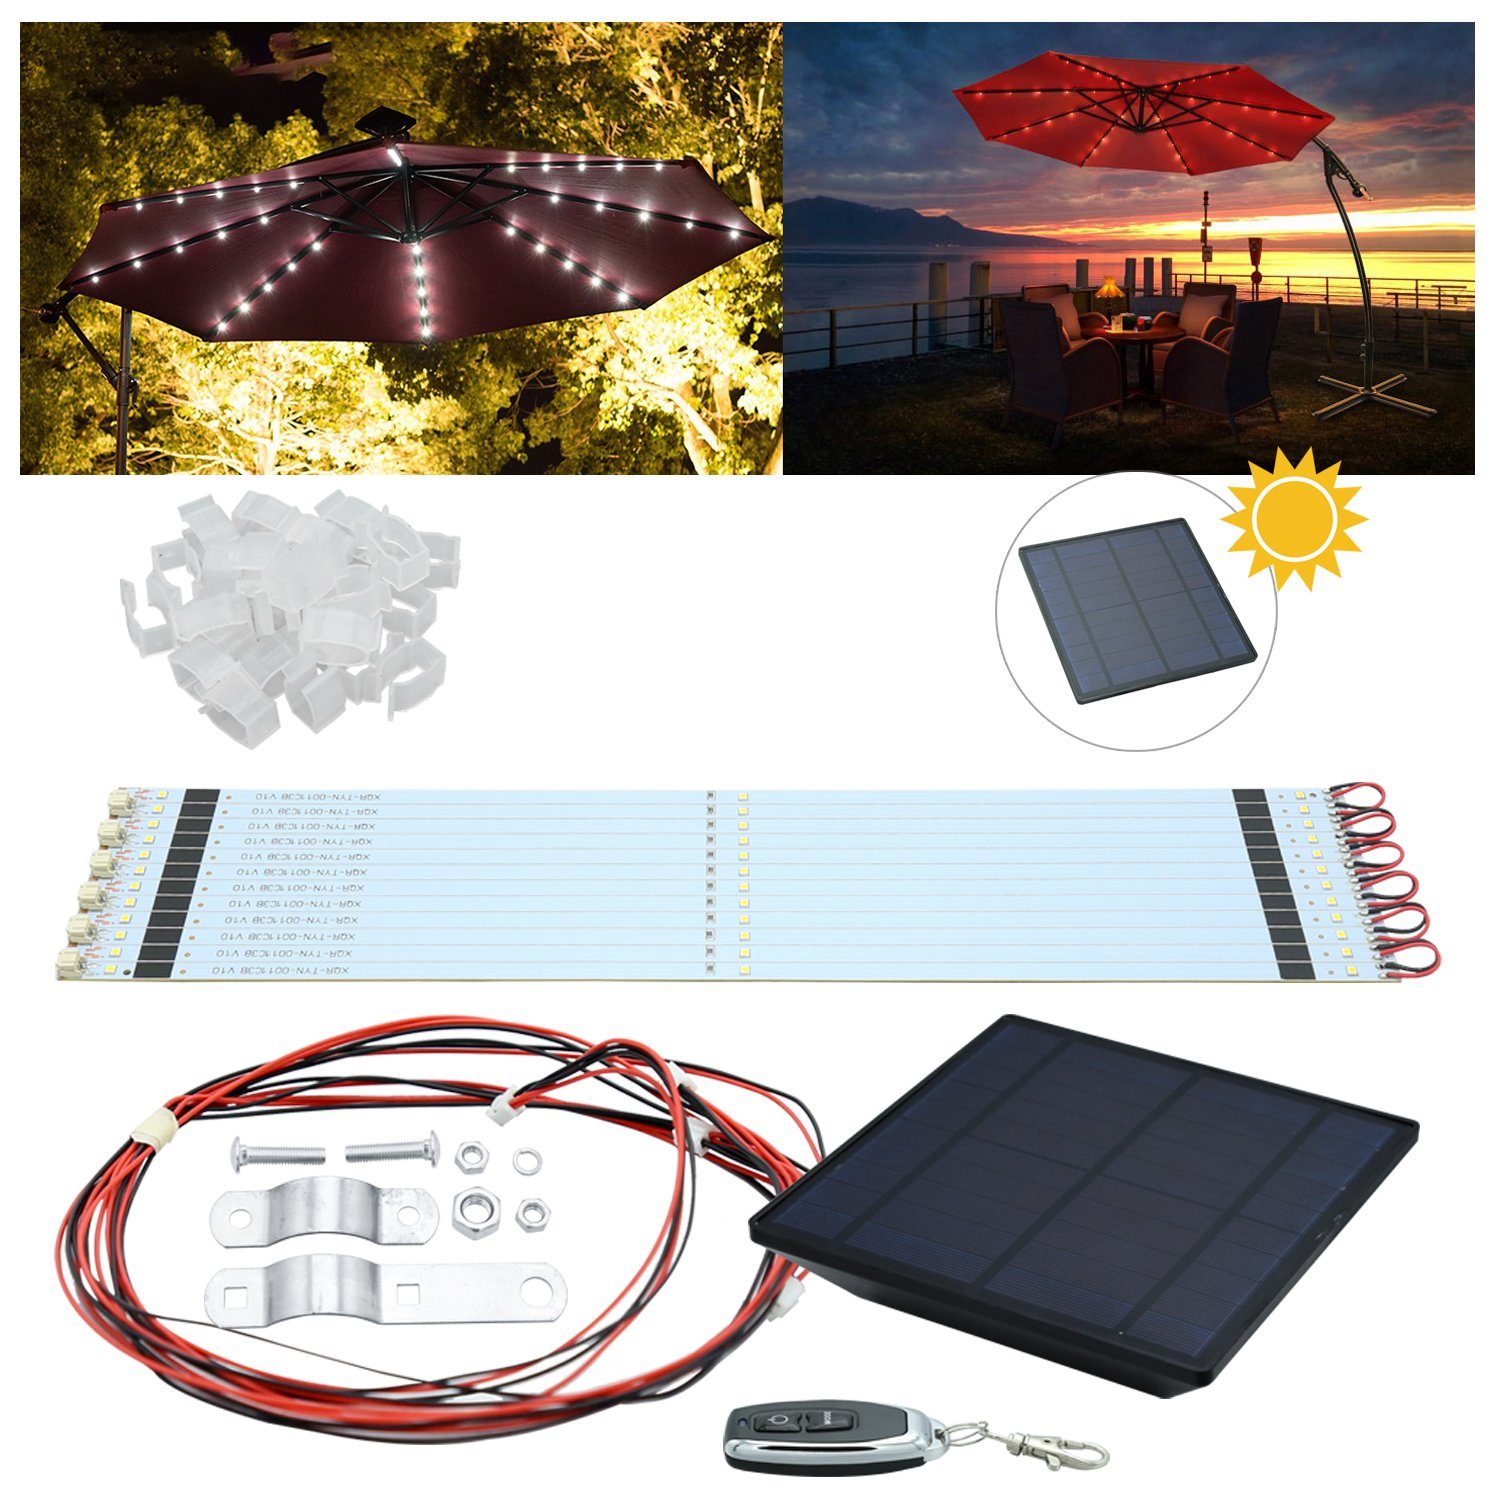 36 TolleTour LED für LED-Lichterkette Sonnenschirm, Solar 36-flammig LED-Lichterkette Lichterkette